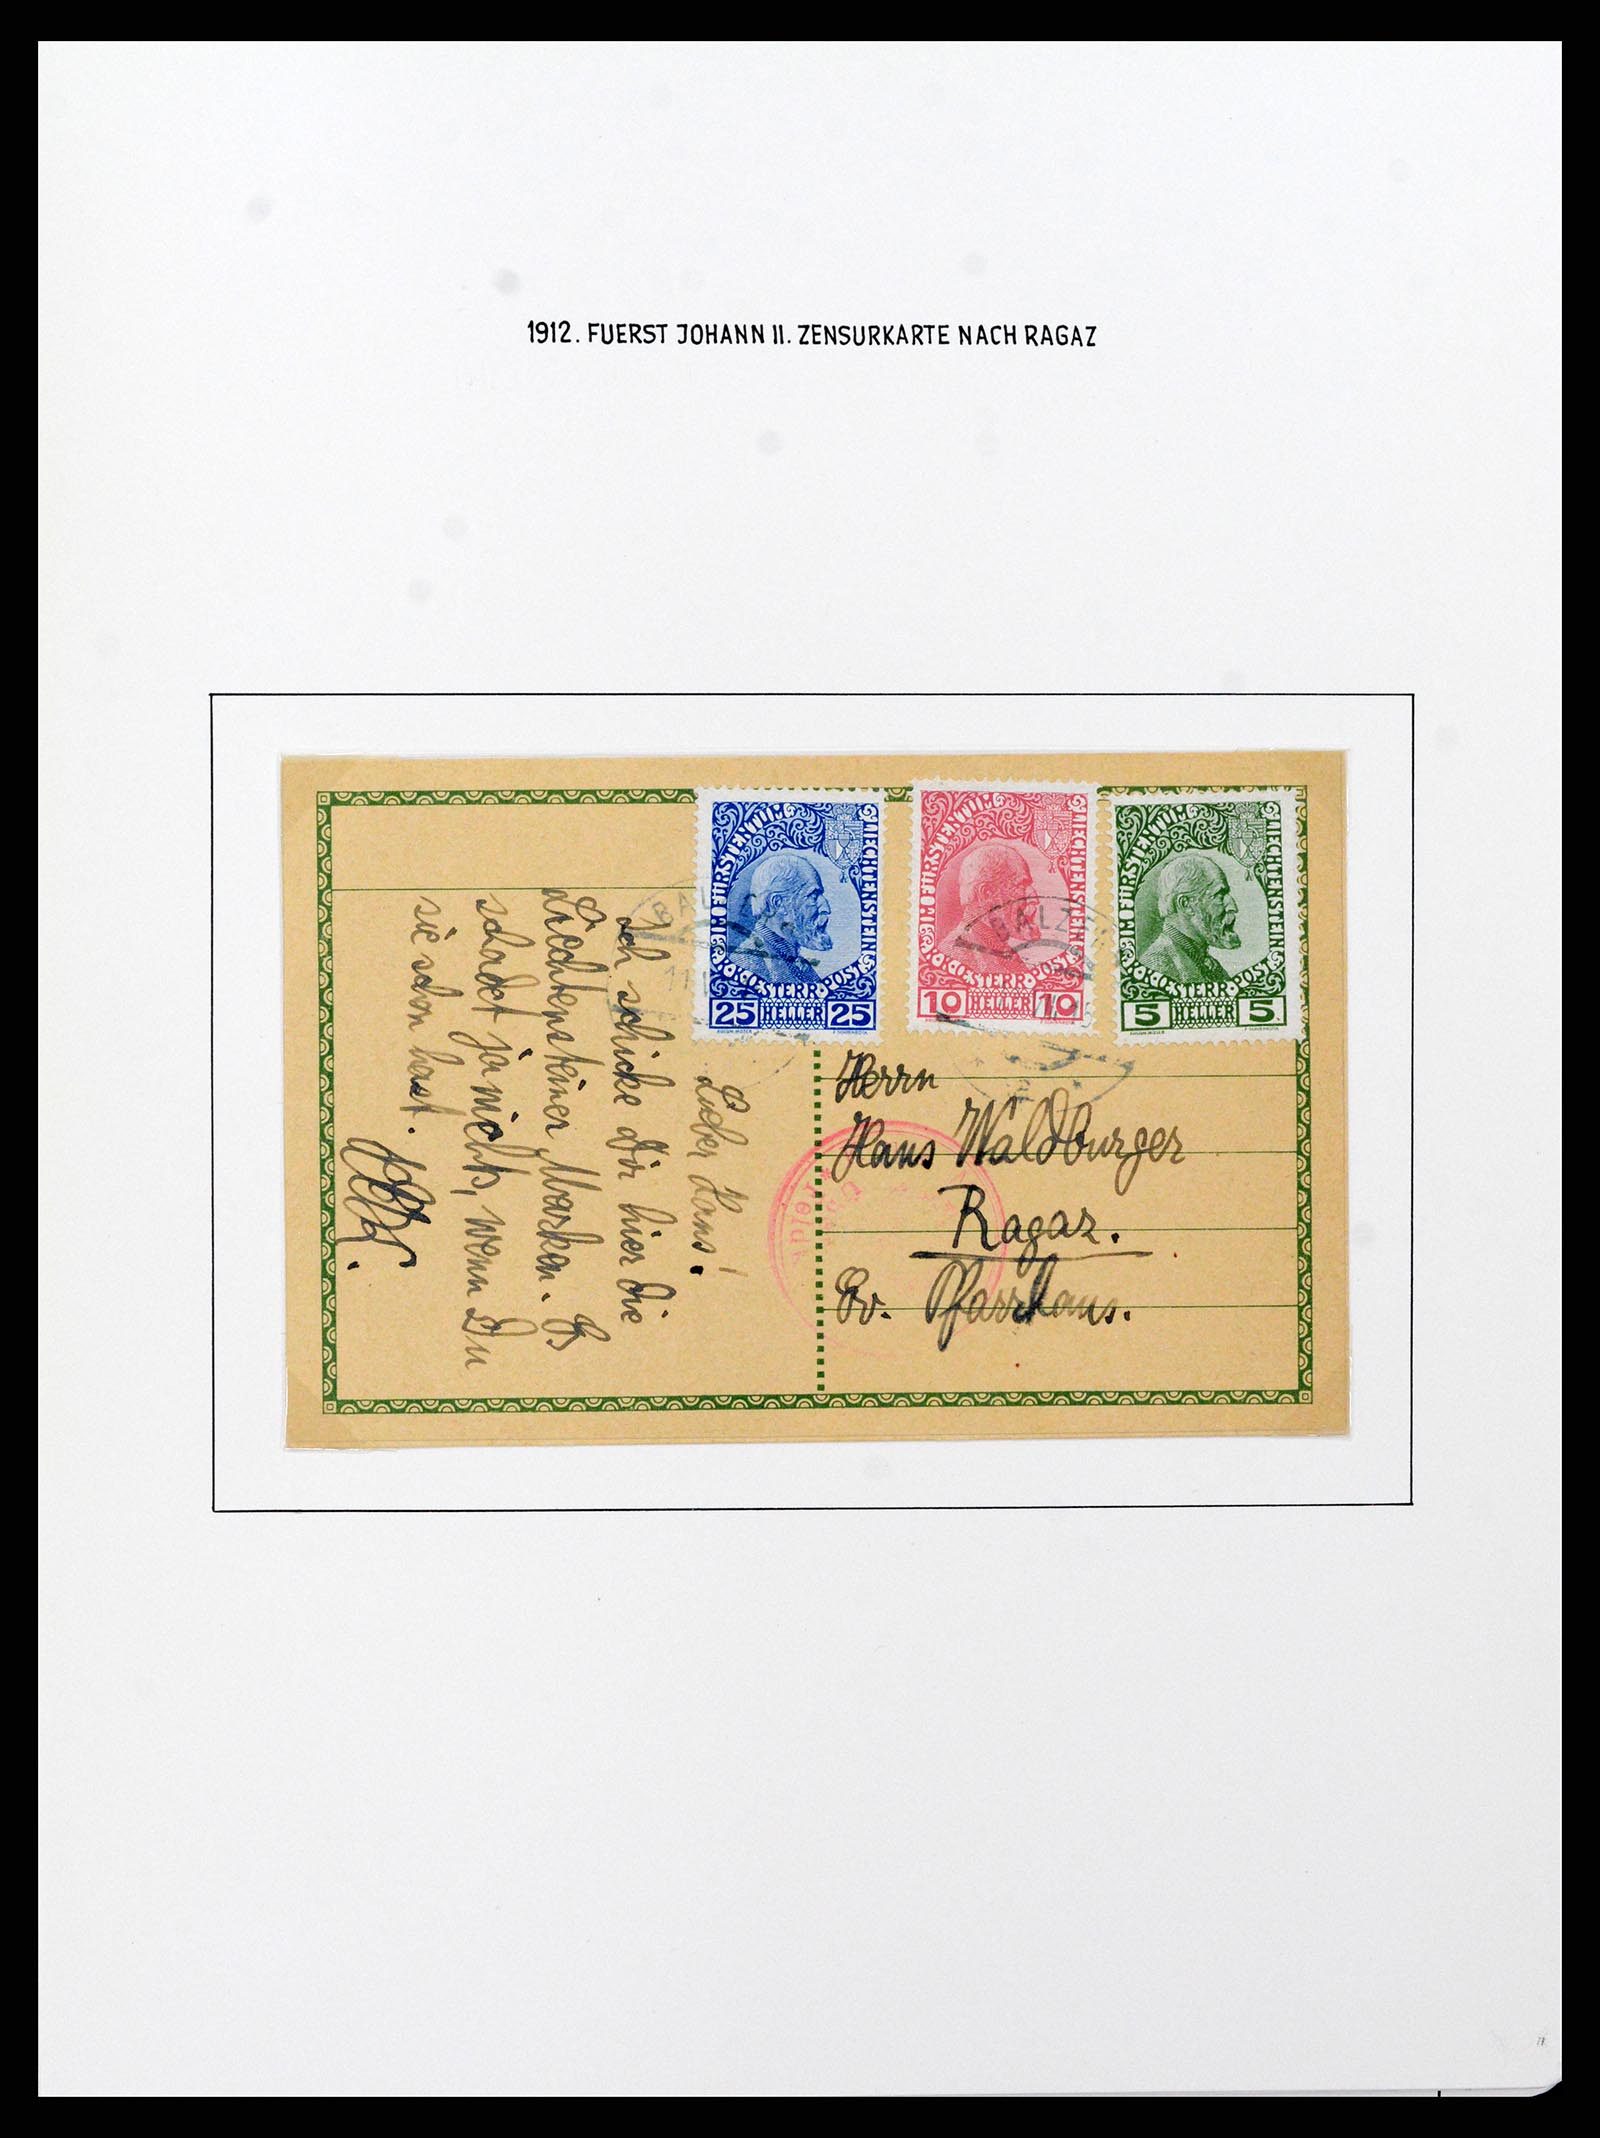 37150 0006 - Stamp collection 37150 Liechtenstein supercollection 1912-1962.